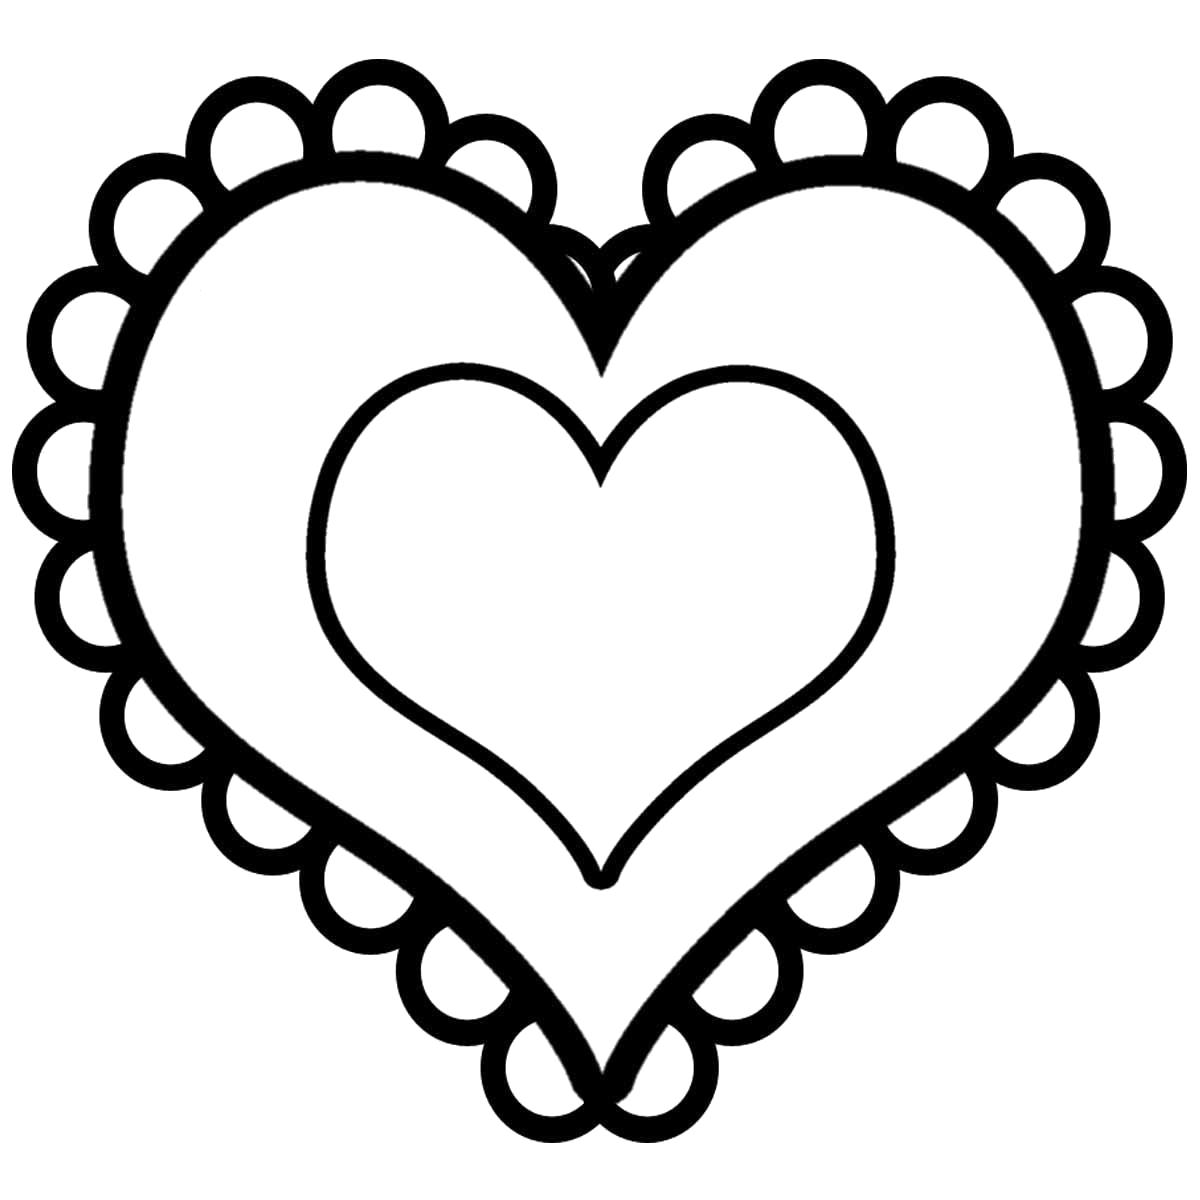 Раскраска Раскраски шаблоны сердечек для вырезания  двойное сердце с кружевом для вырезания из бумаги. День святого валентина